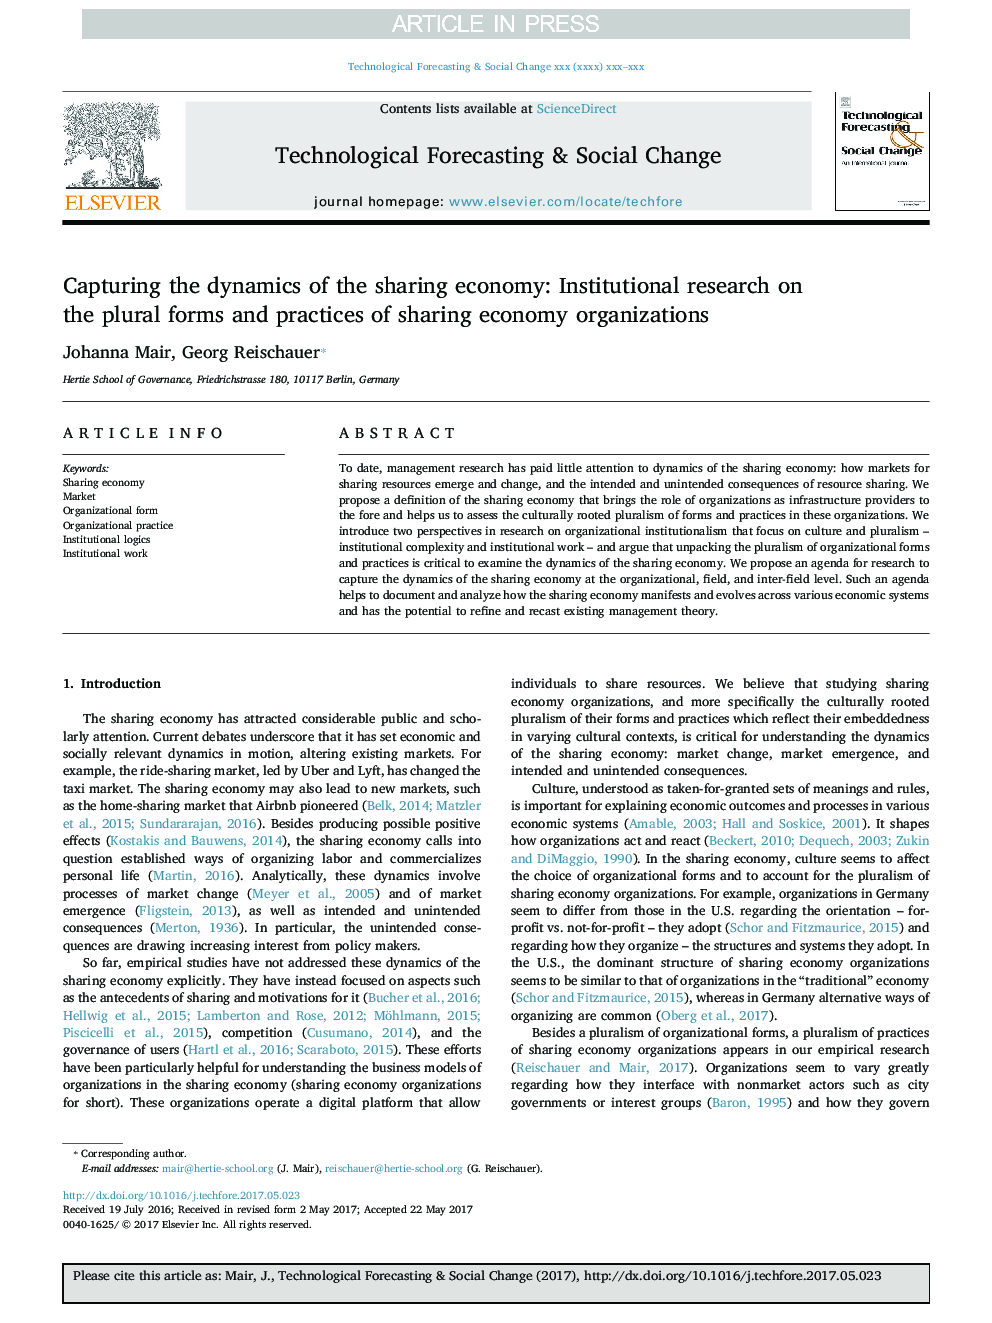 ضبط پویایی اقتصاد به اشتراک گذاری: تحقیقات نهادی در مورد اشکال و شیوه های اشتراک سازمان های اقتصادی 